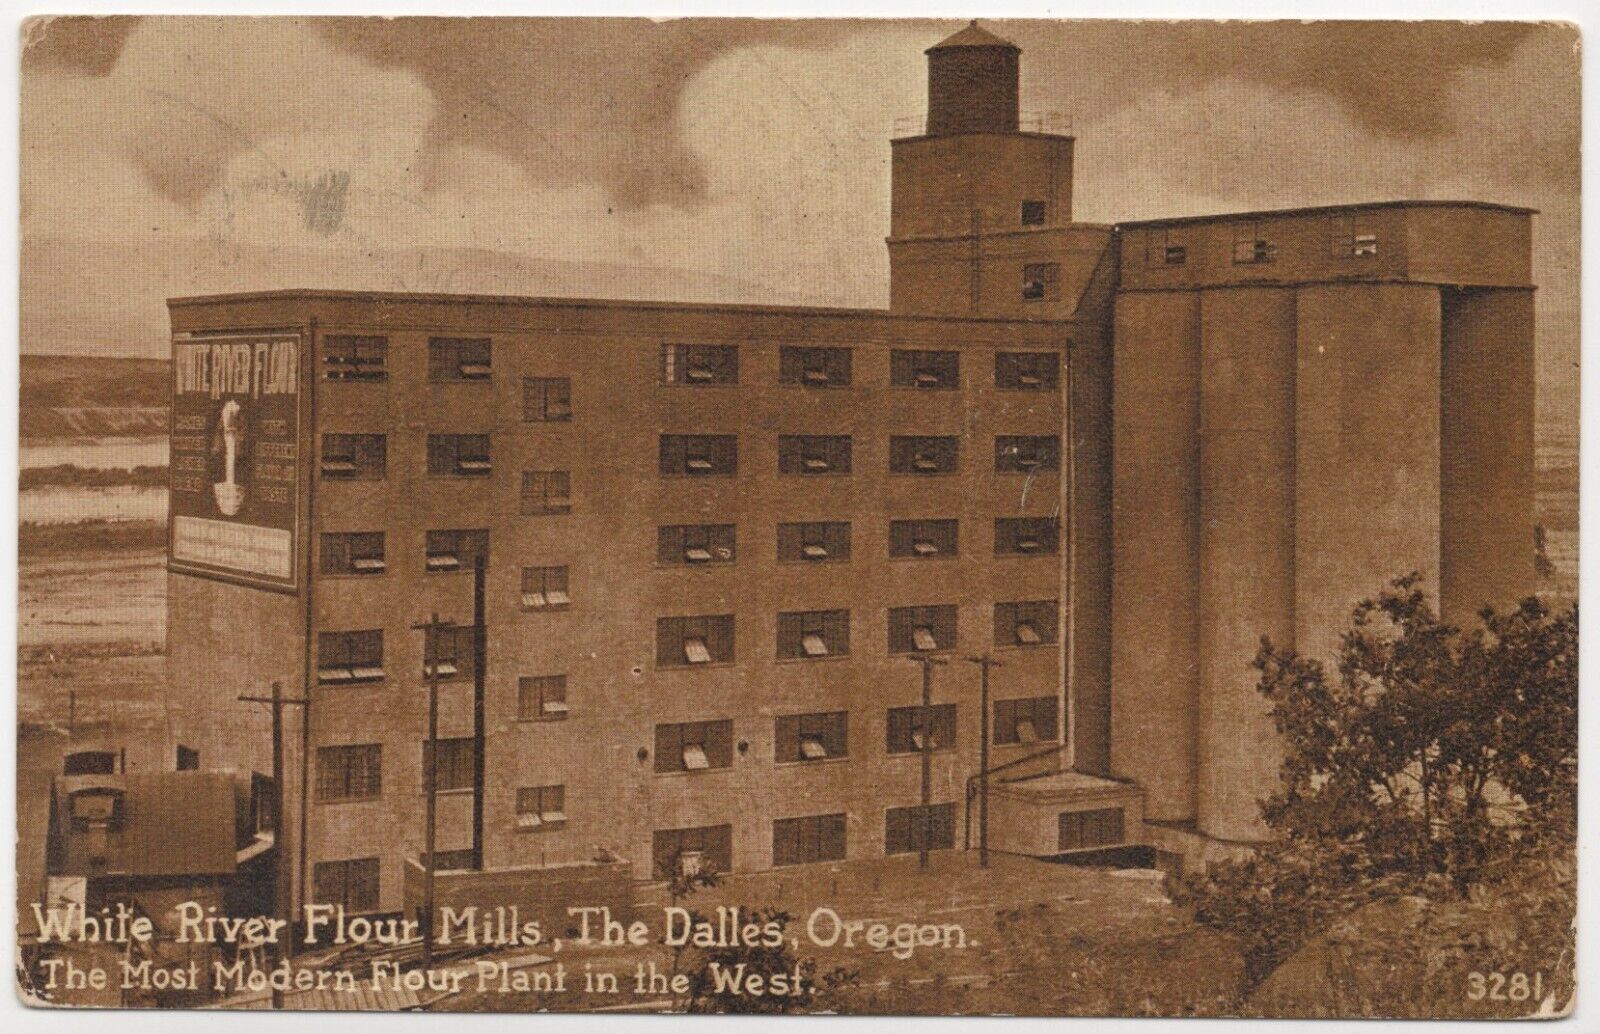 White River Flour Mills The Dalles, Oregon Unposted c1910s Lithograph Postcard